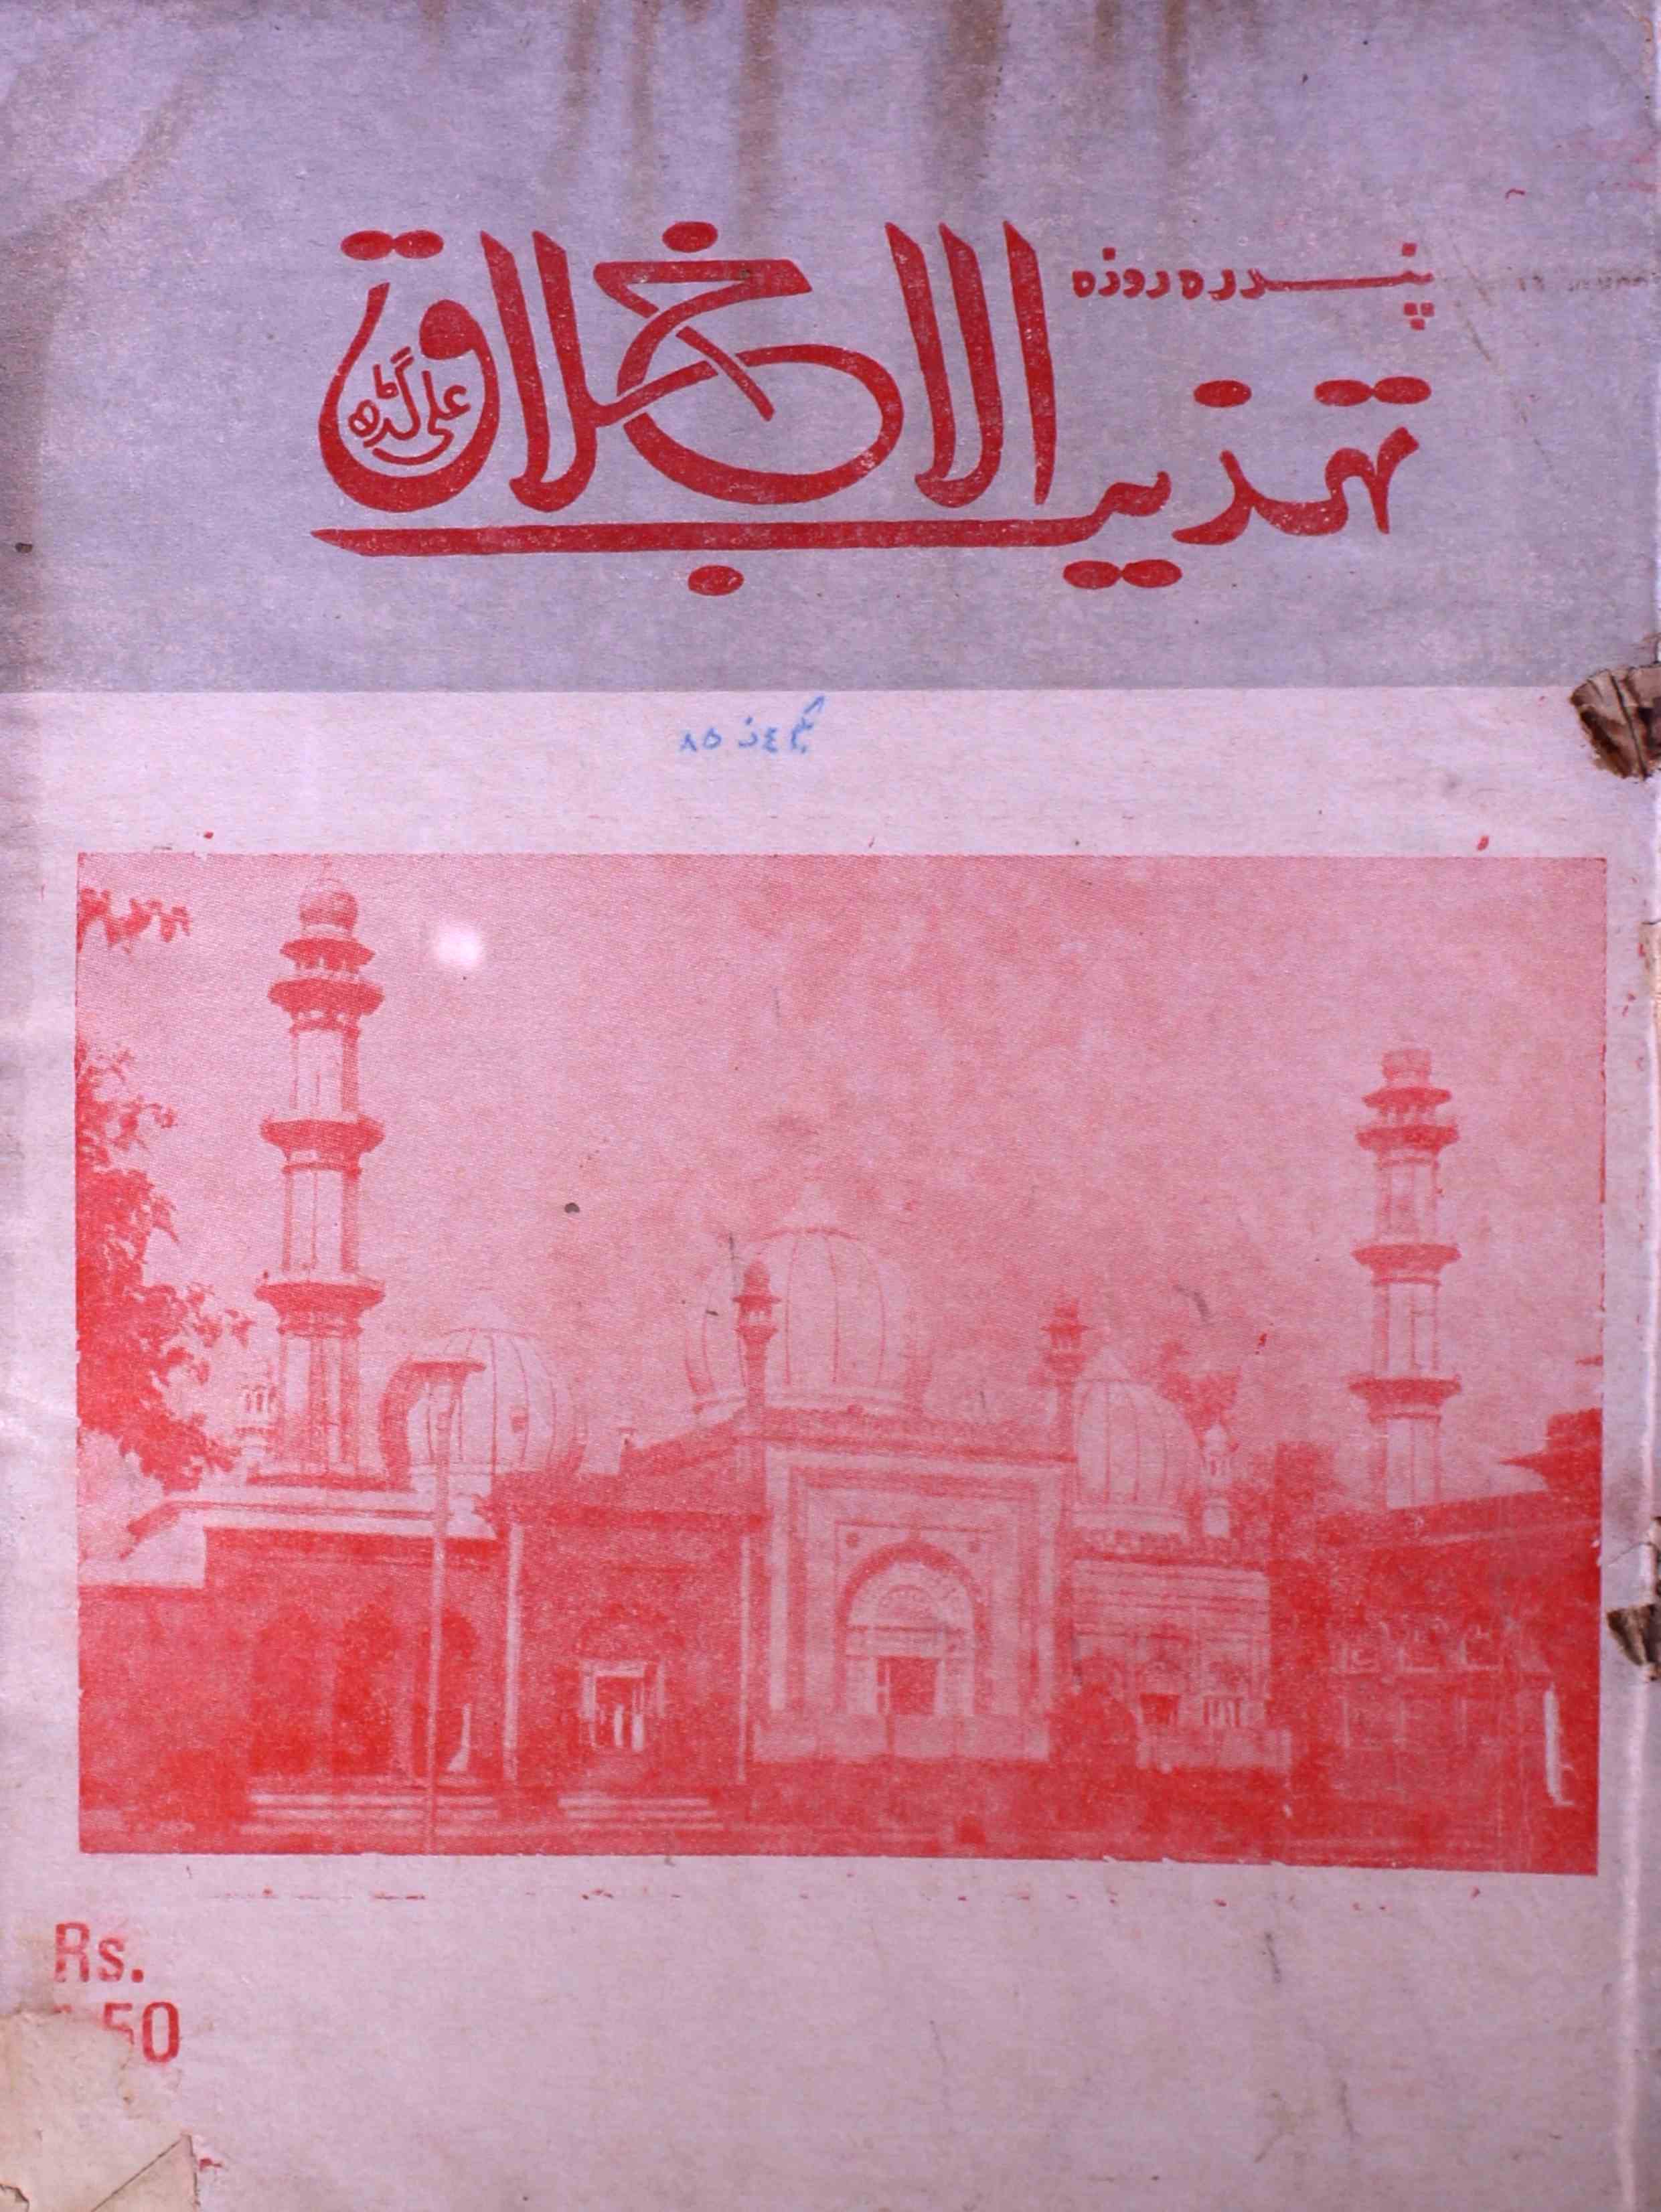 tahzibul-akhlaq-aligarh-shumara-number-011-syed-hamid-magazines